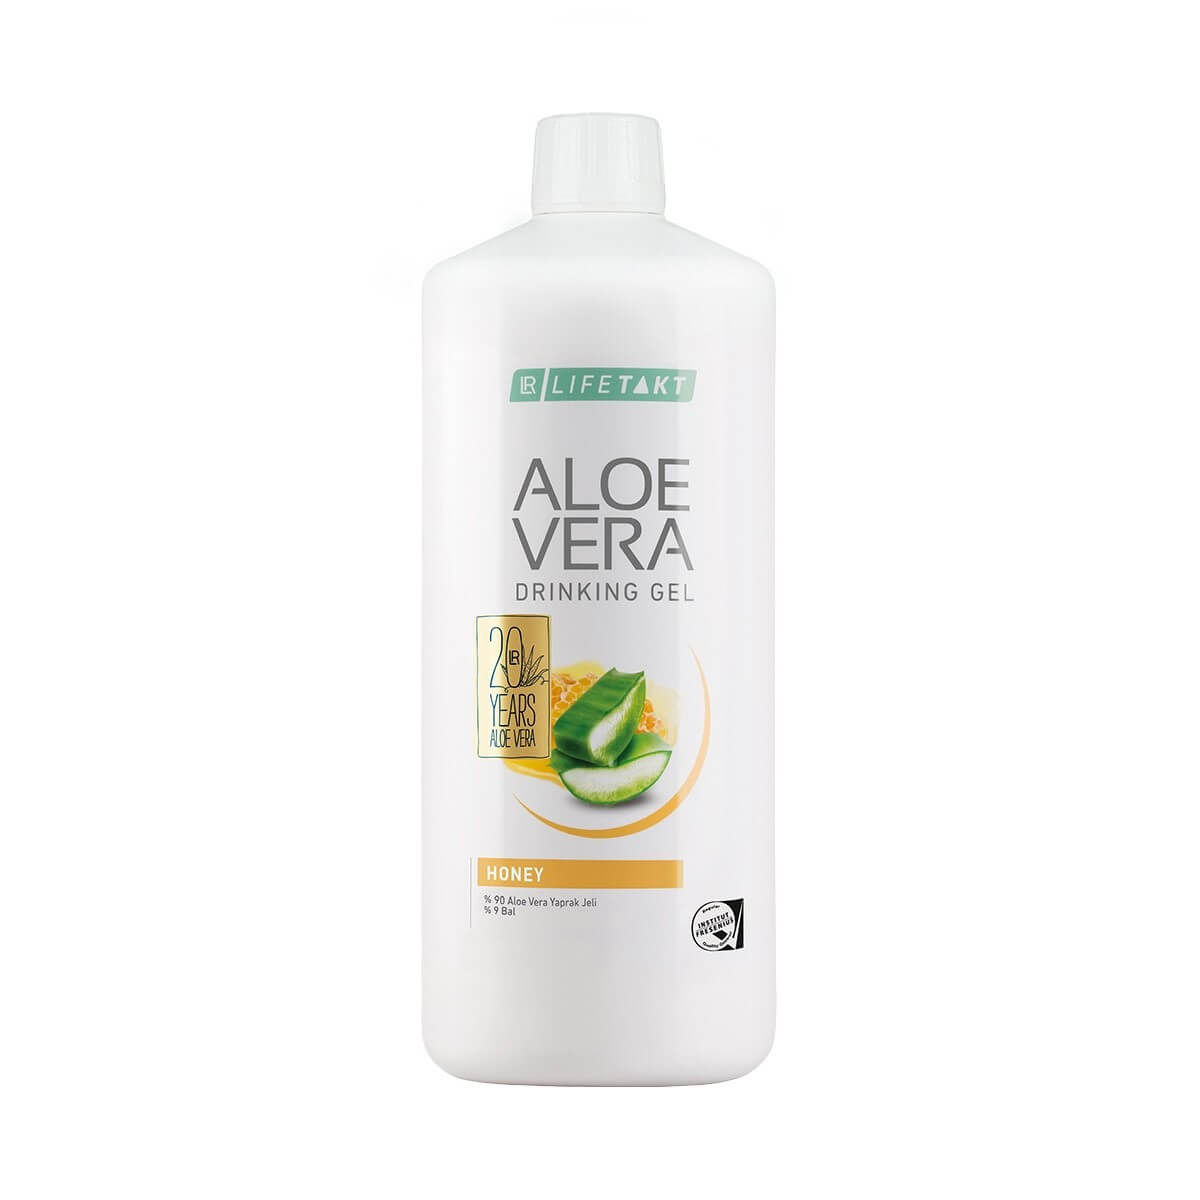 Aloe Vera Drinking Gel Honey support Health